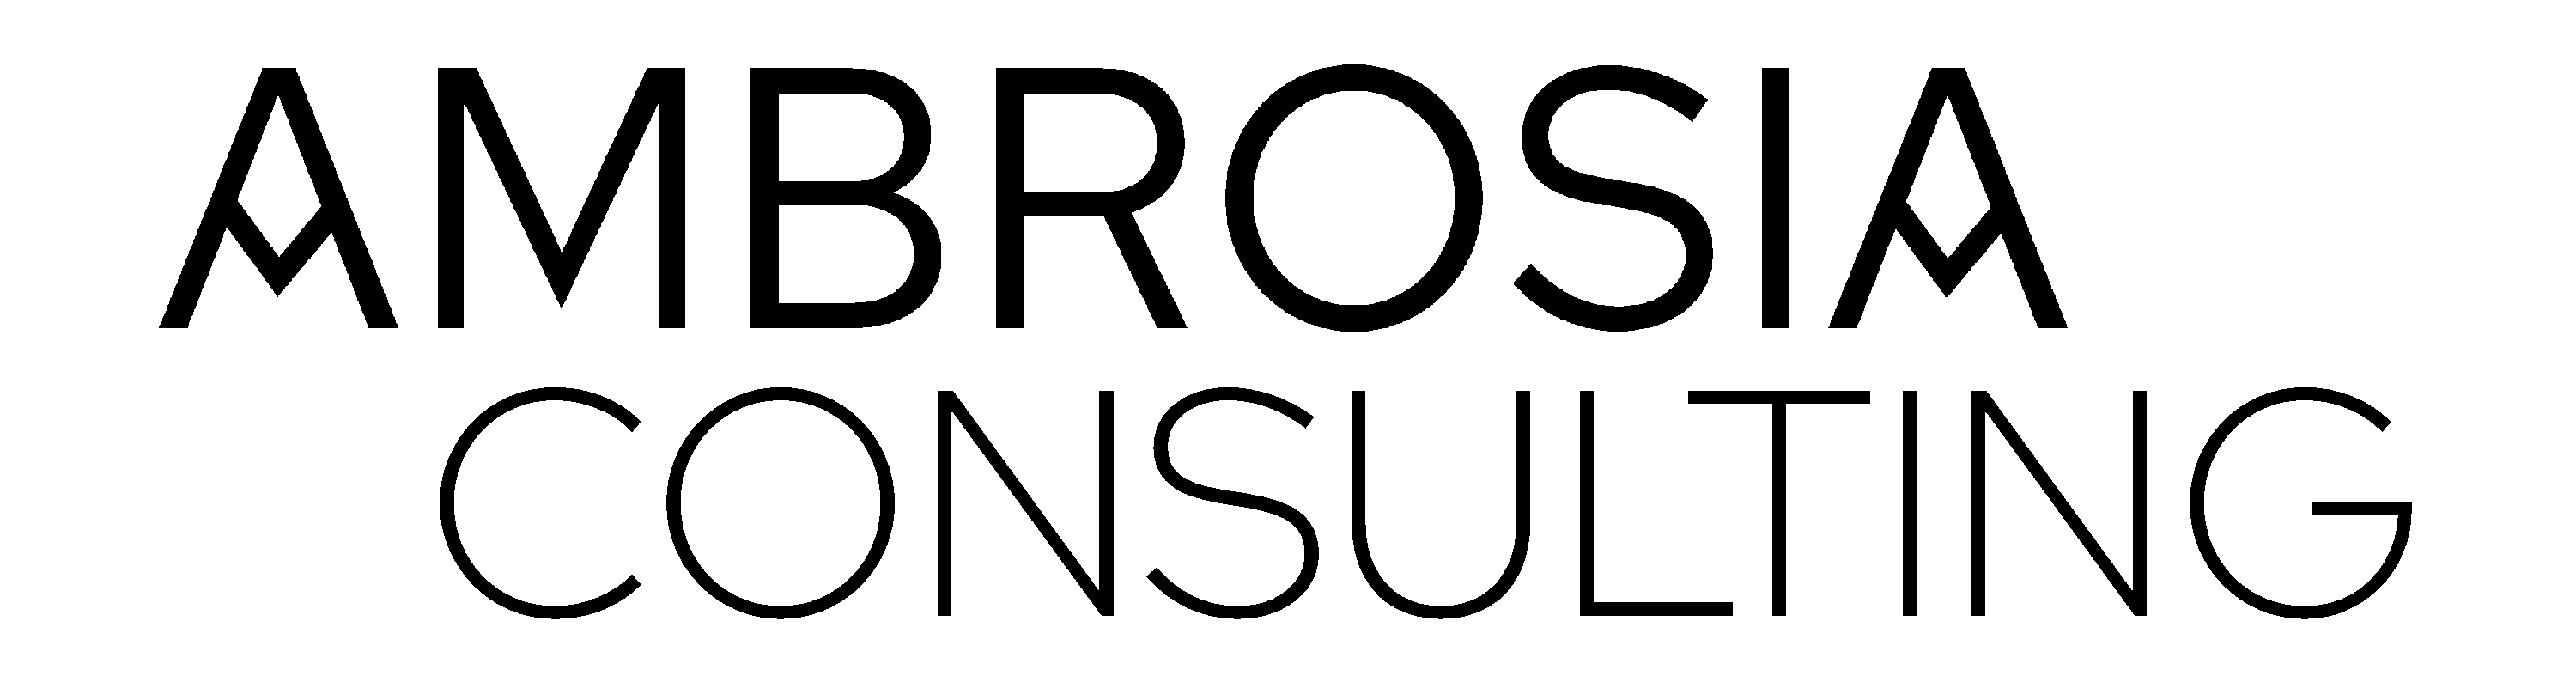 ambrosia-consulting-logo-white